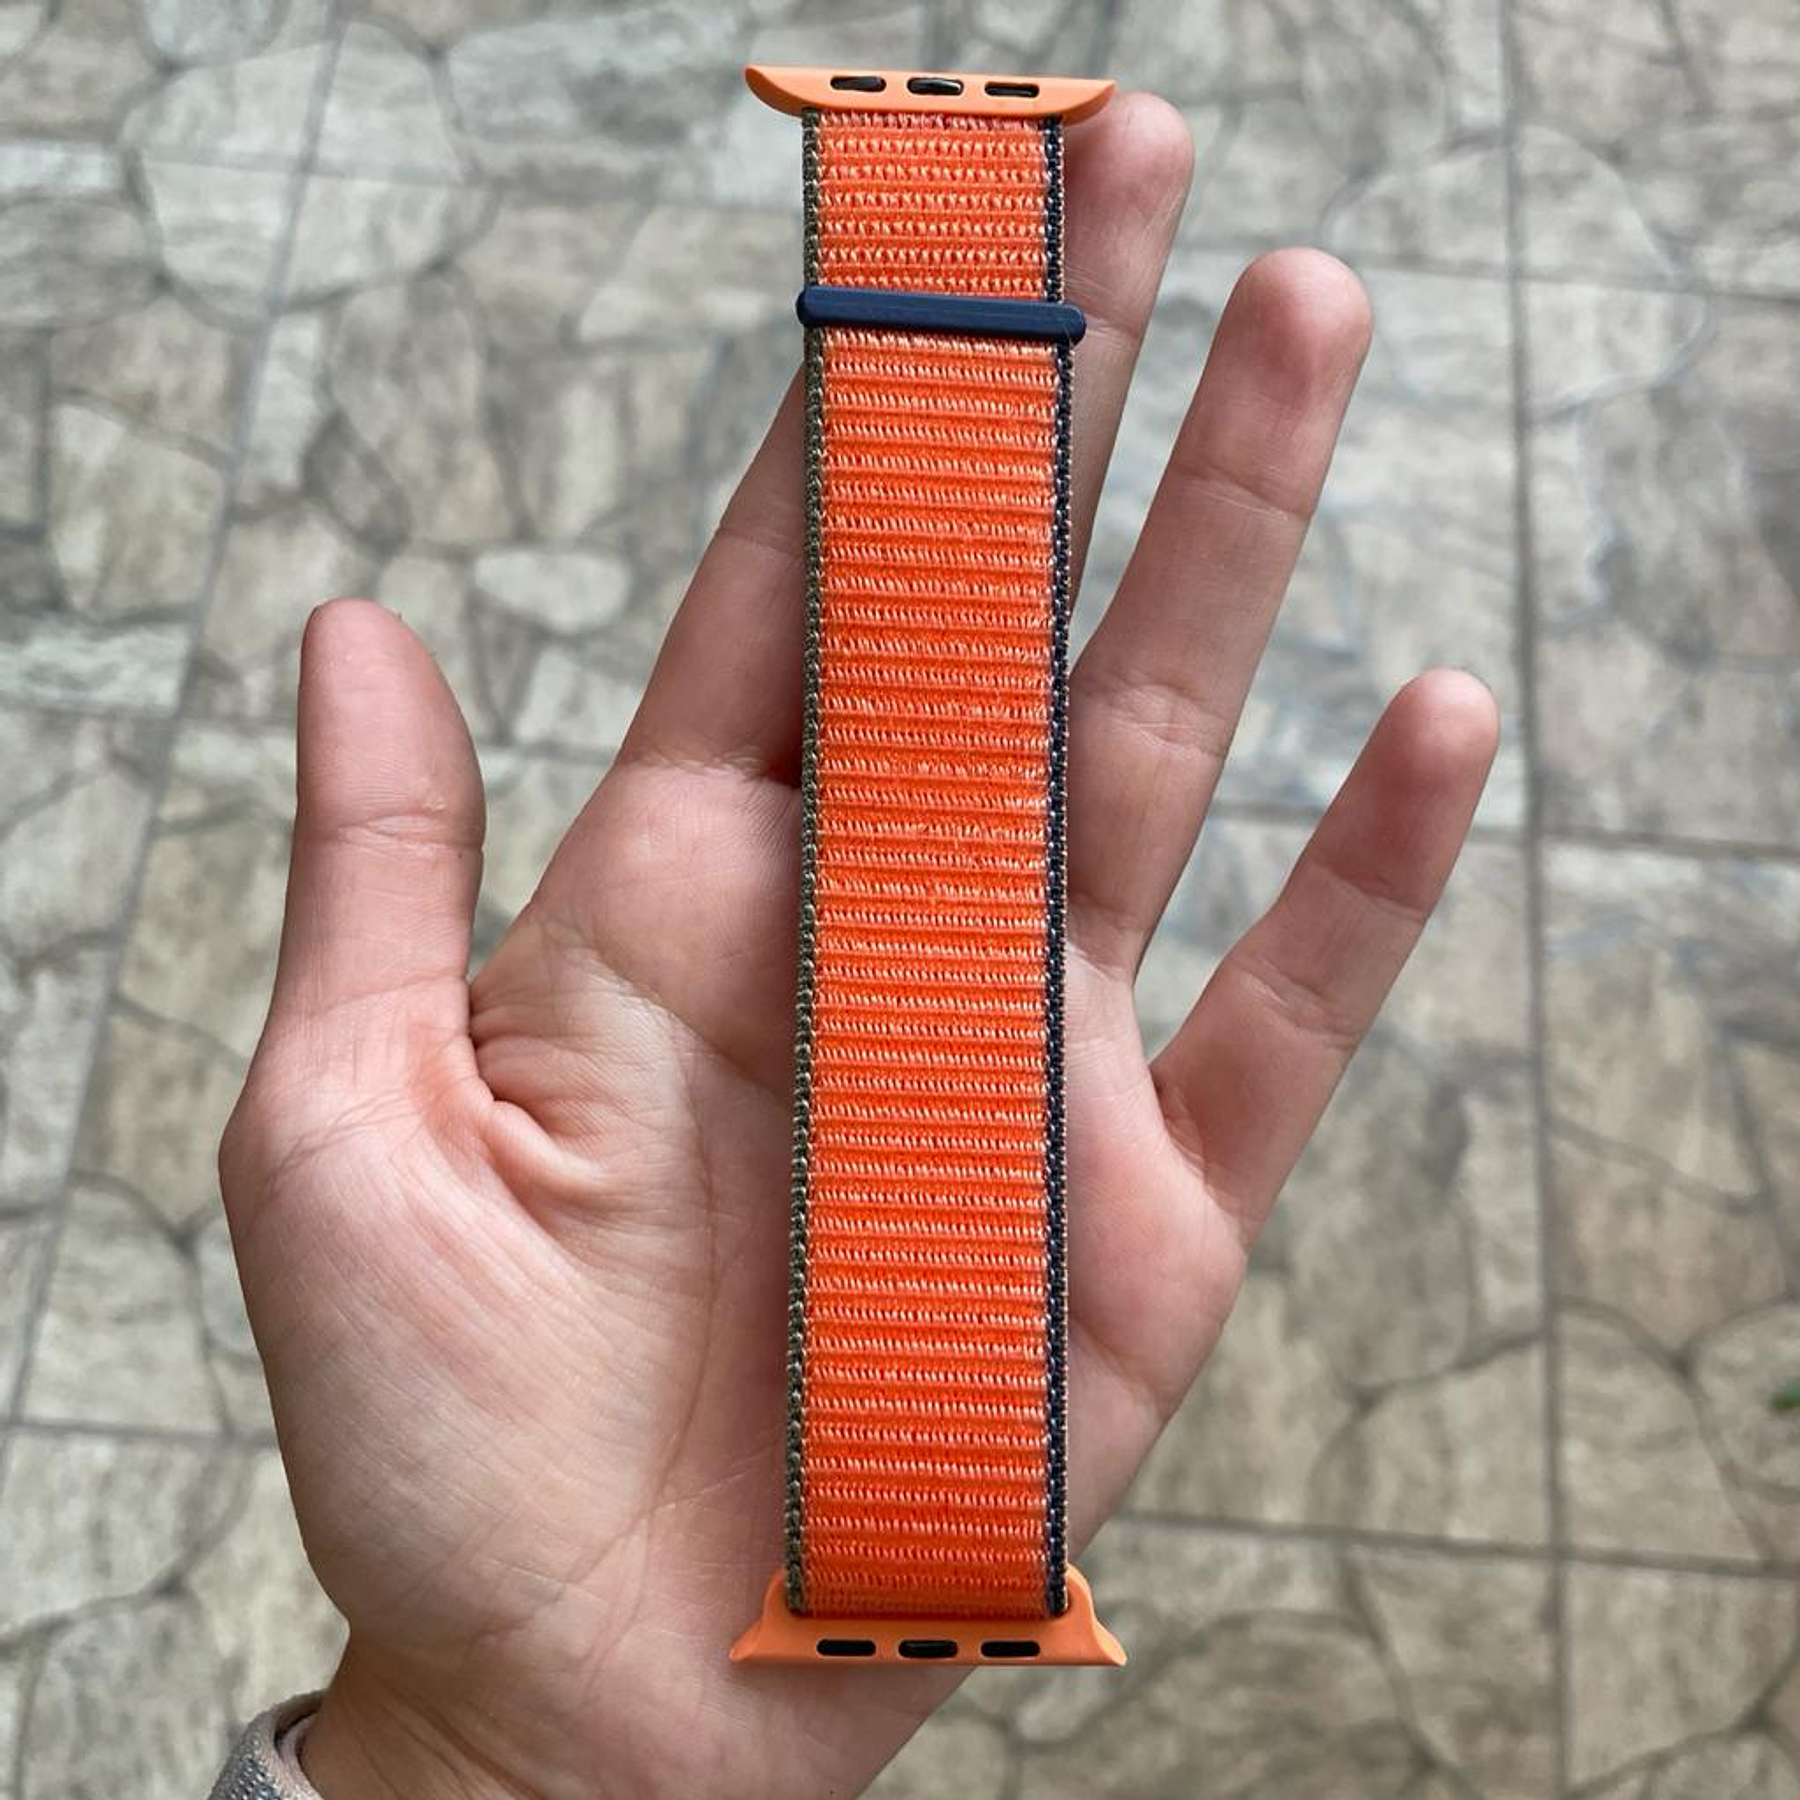 Correa plana vistosa 22mm color naranja para smartwatch Genérico